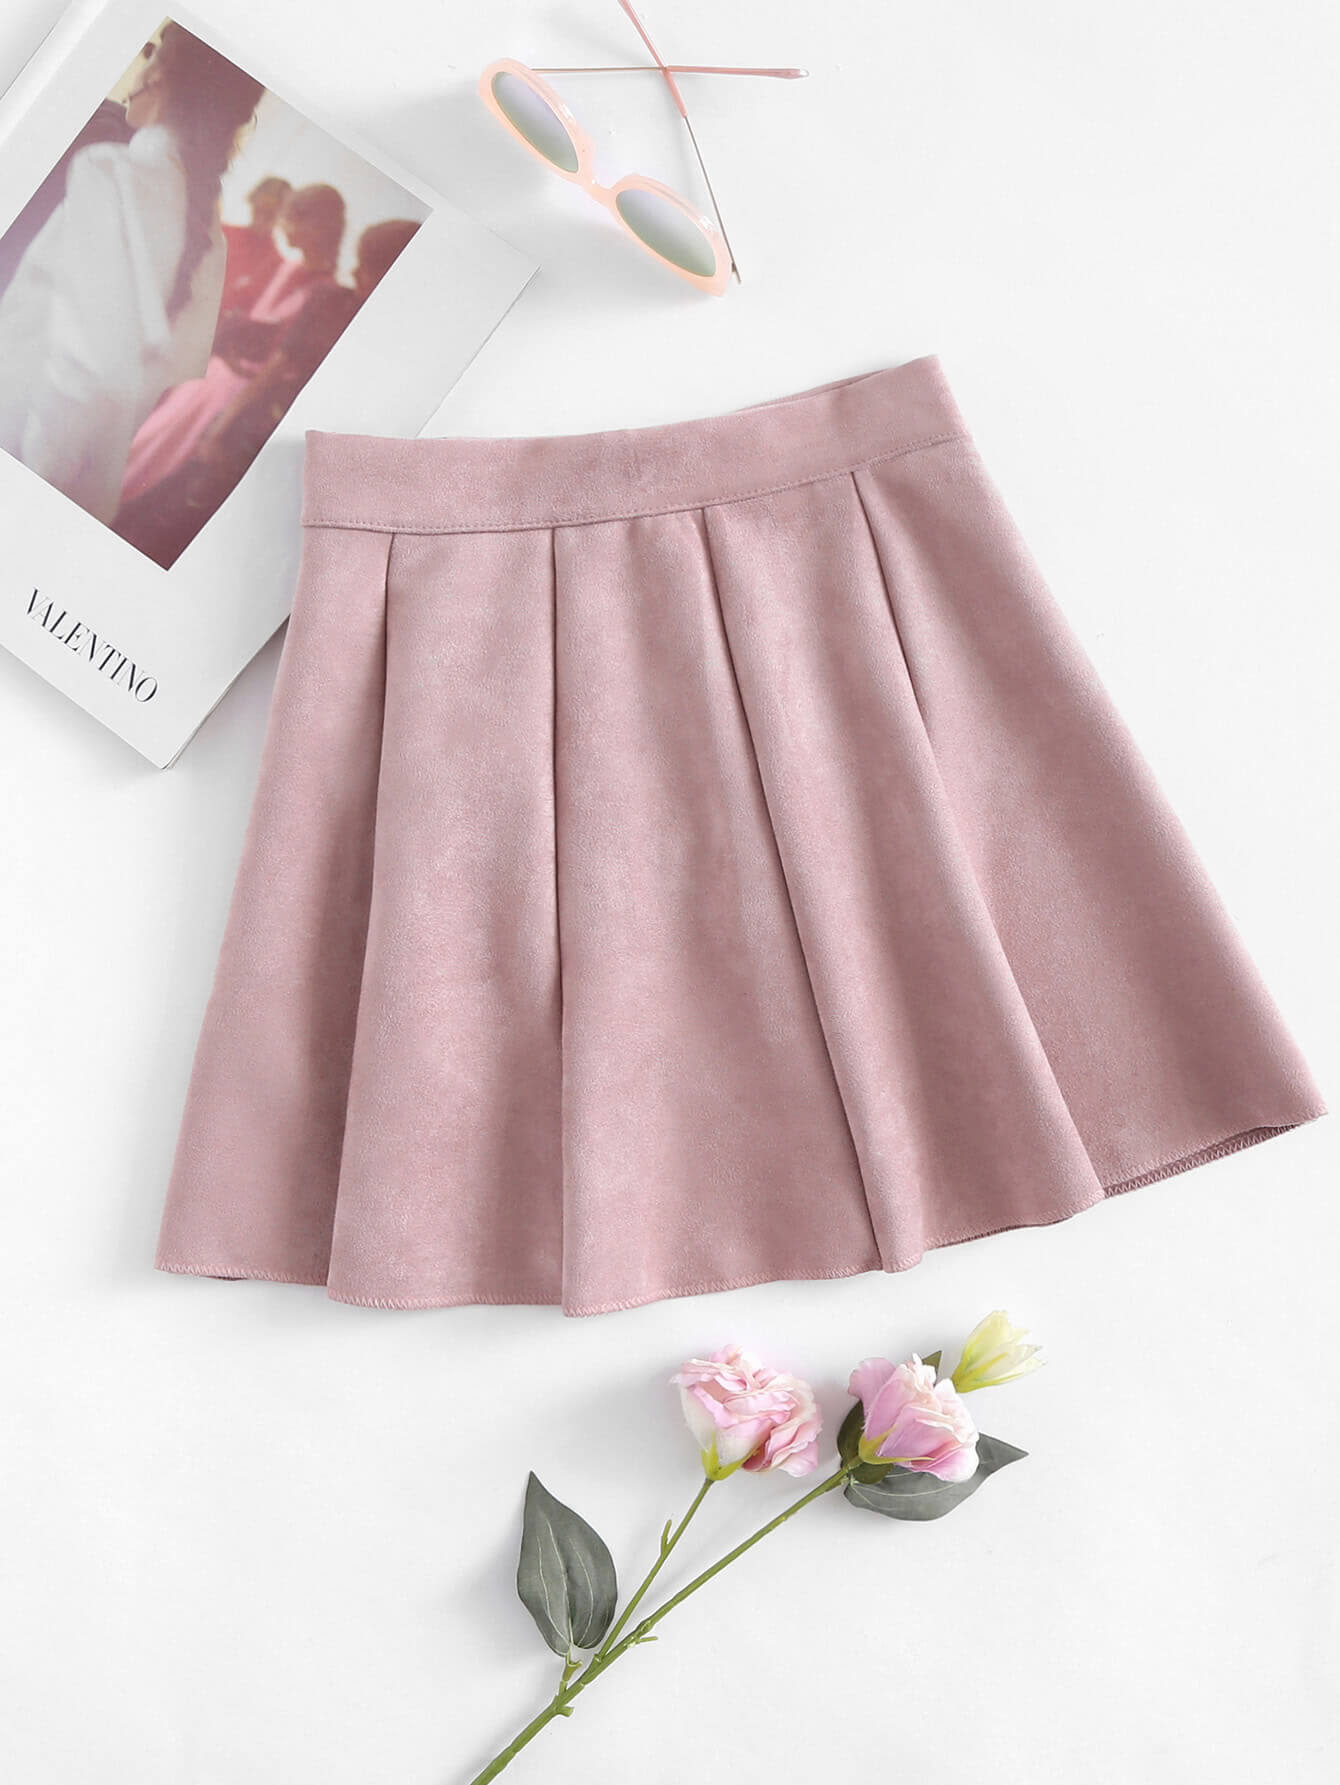 Glosario de moda: tipos faldas Blog de DSIGNO